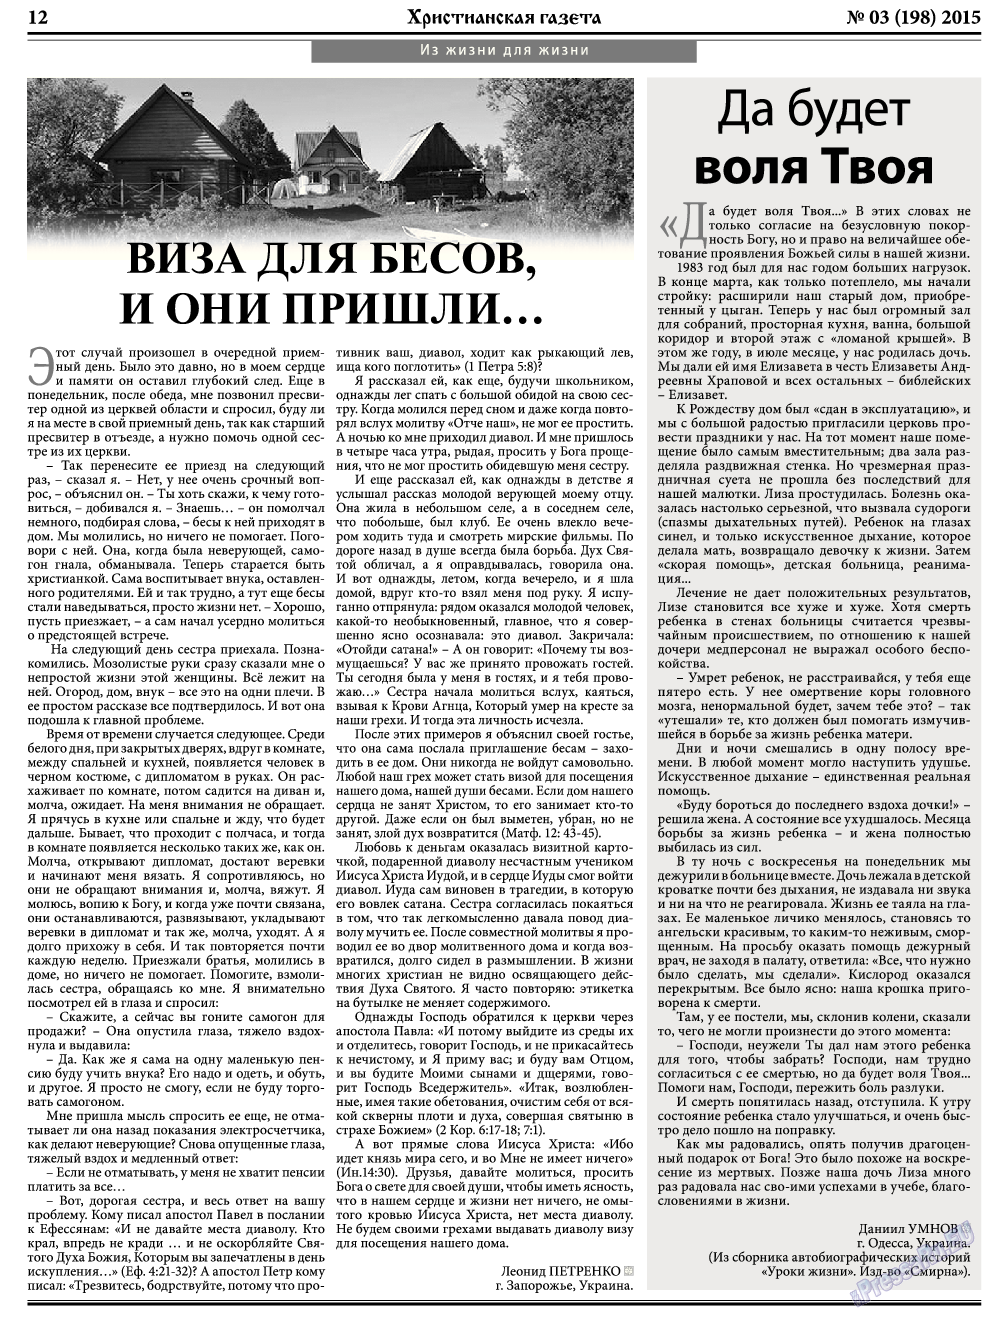 Христианская газета, газета. 2015 №3 стр.12